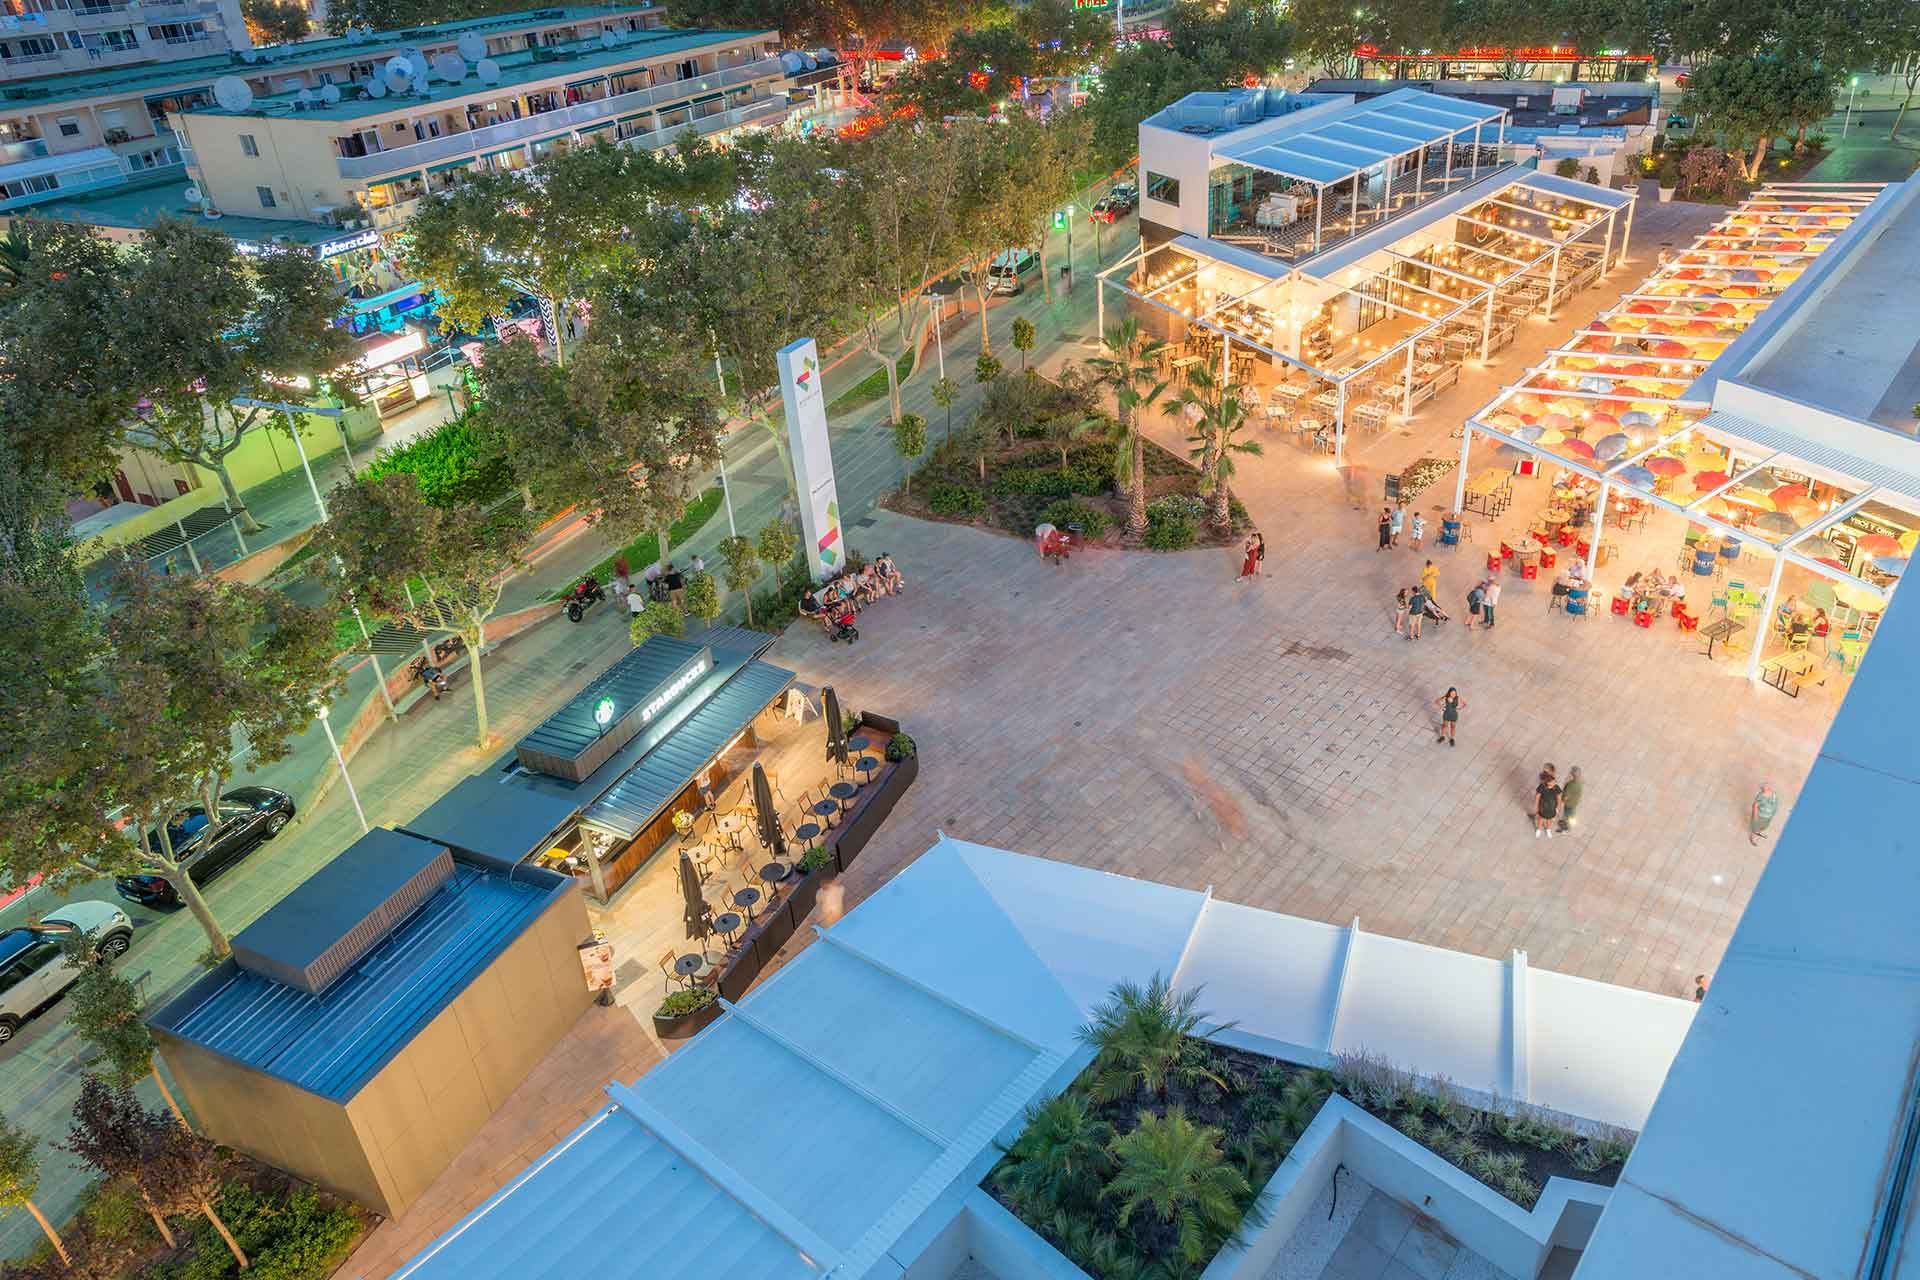 Aerial view of the shopping center pergolas